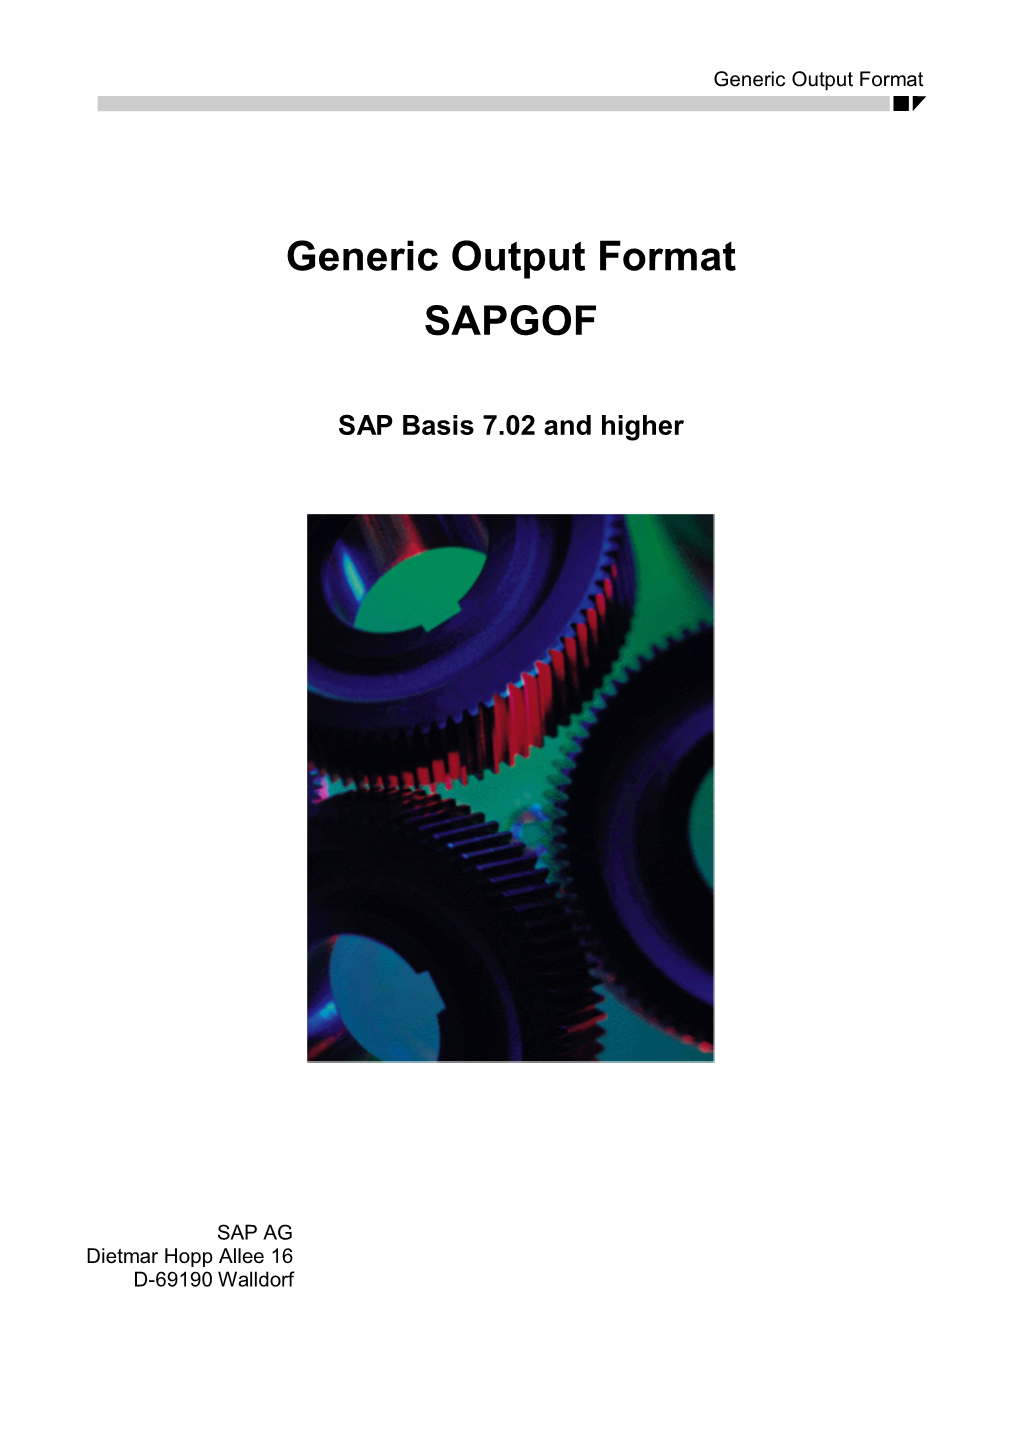 Generic Output Format: SAP